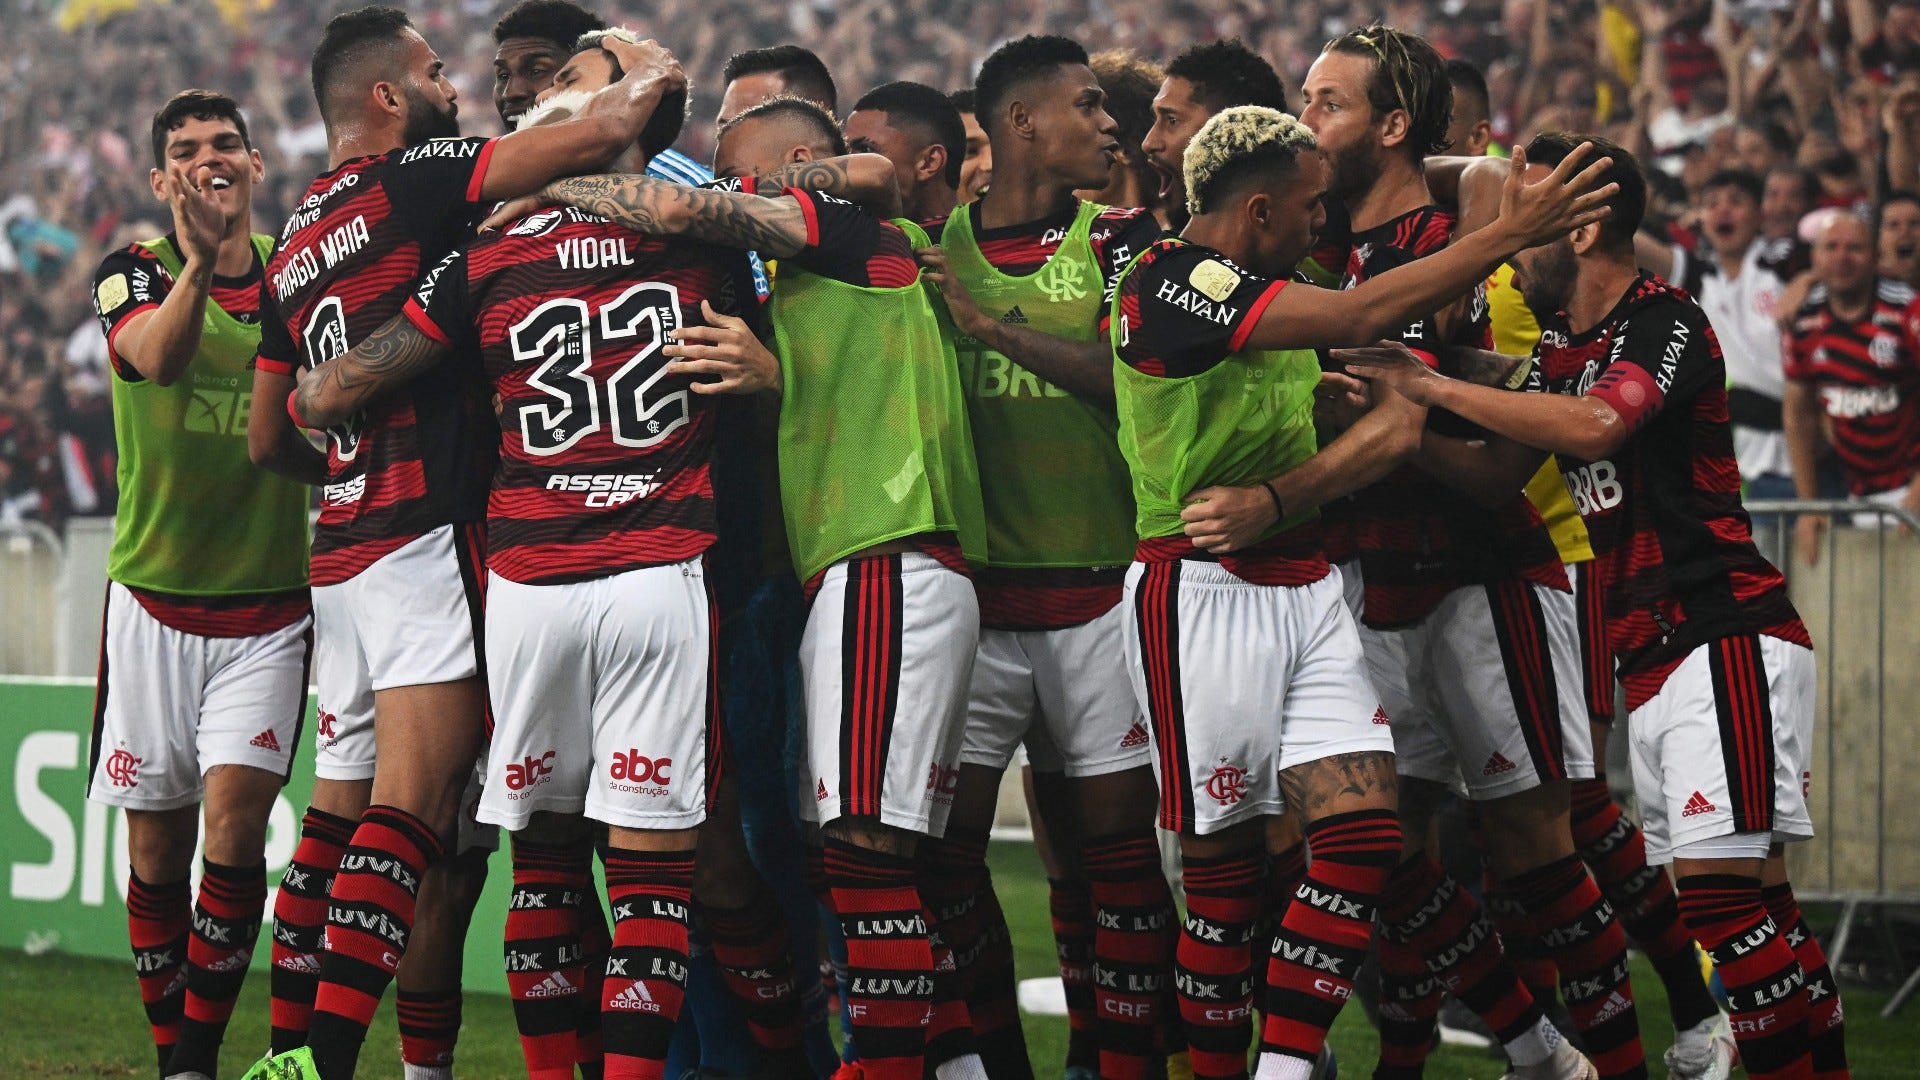 Confira como foram as sete finais do Flamengo na história da Copa